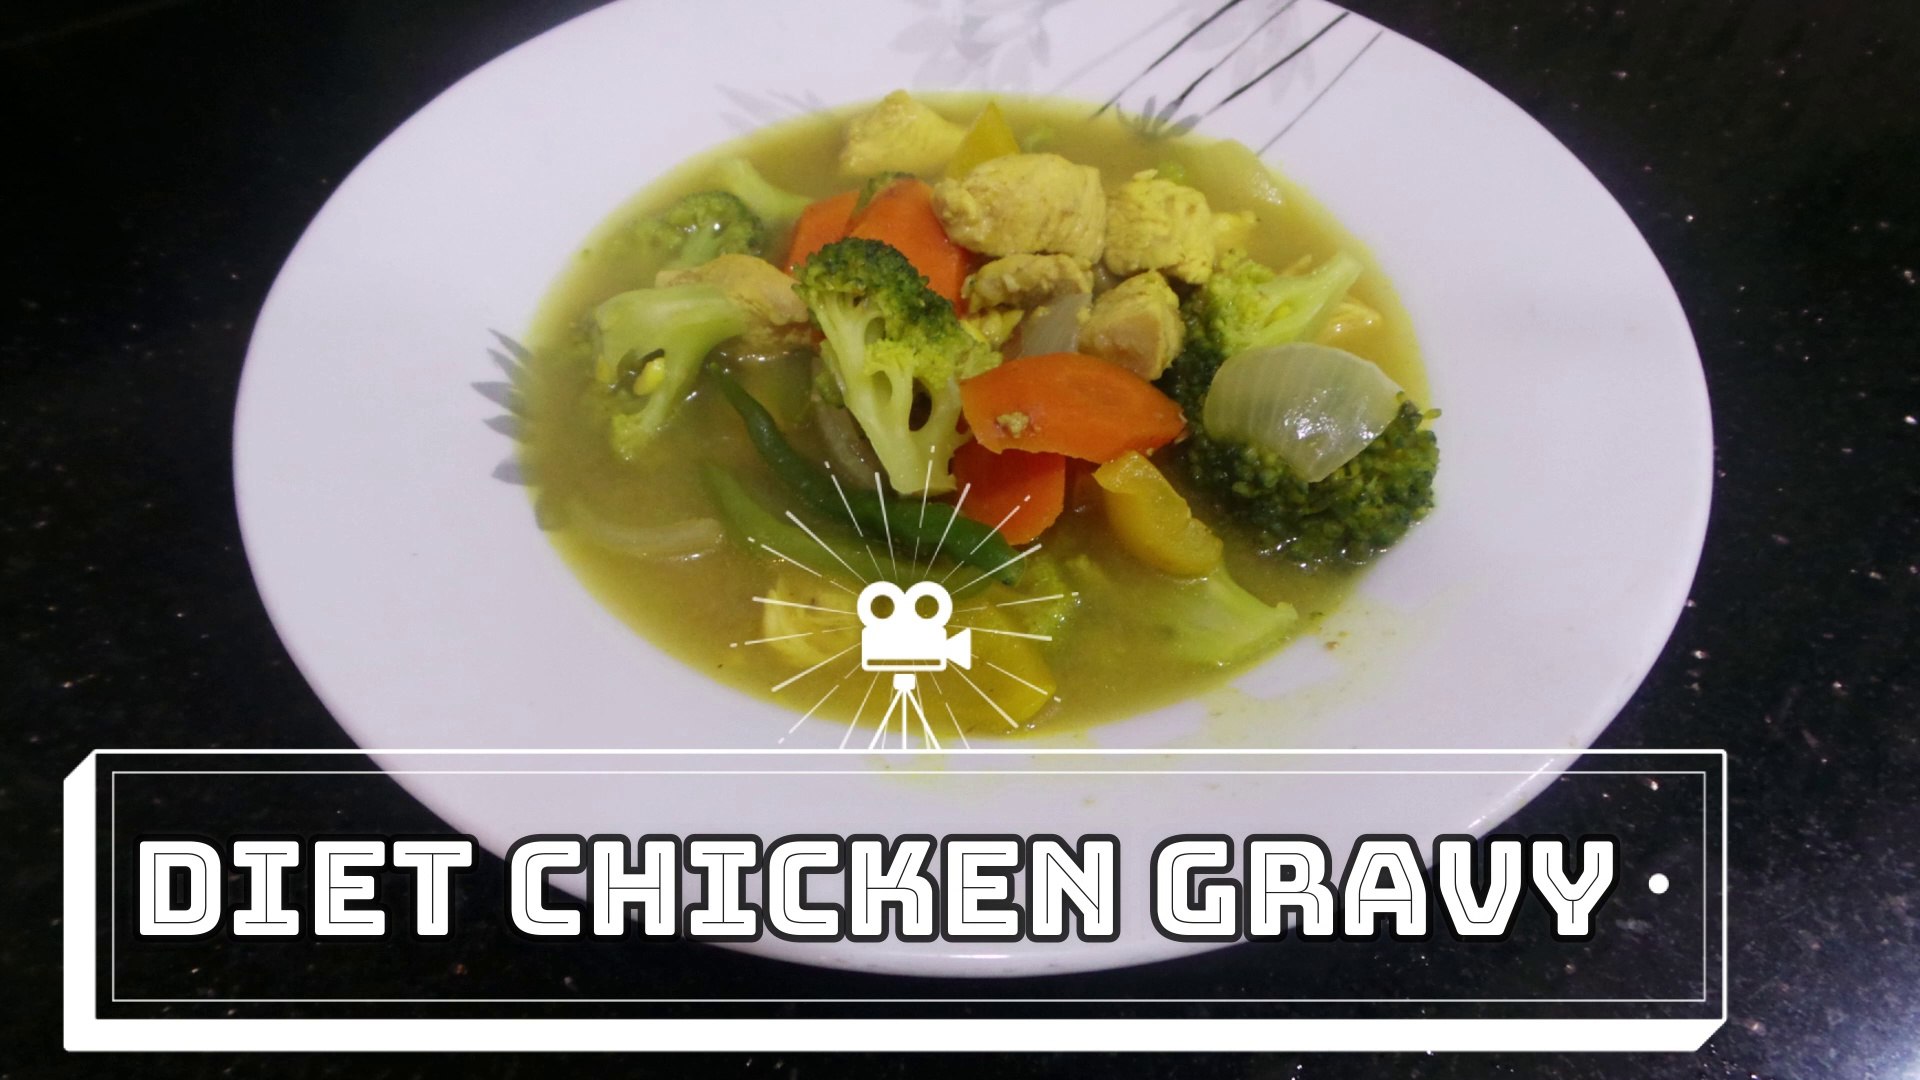 Diet chicken gravy | How to make Diet Chicken | Chicken Gravy or Soup